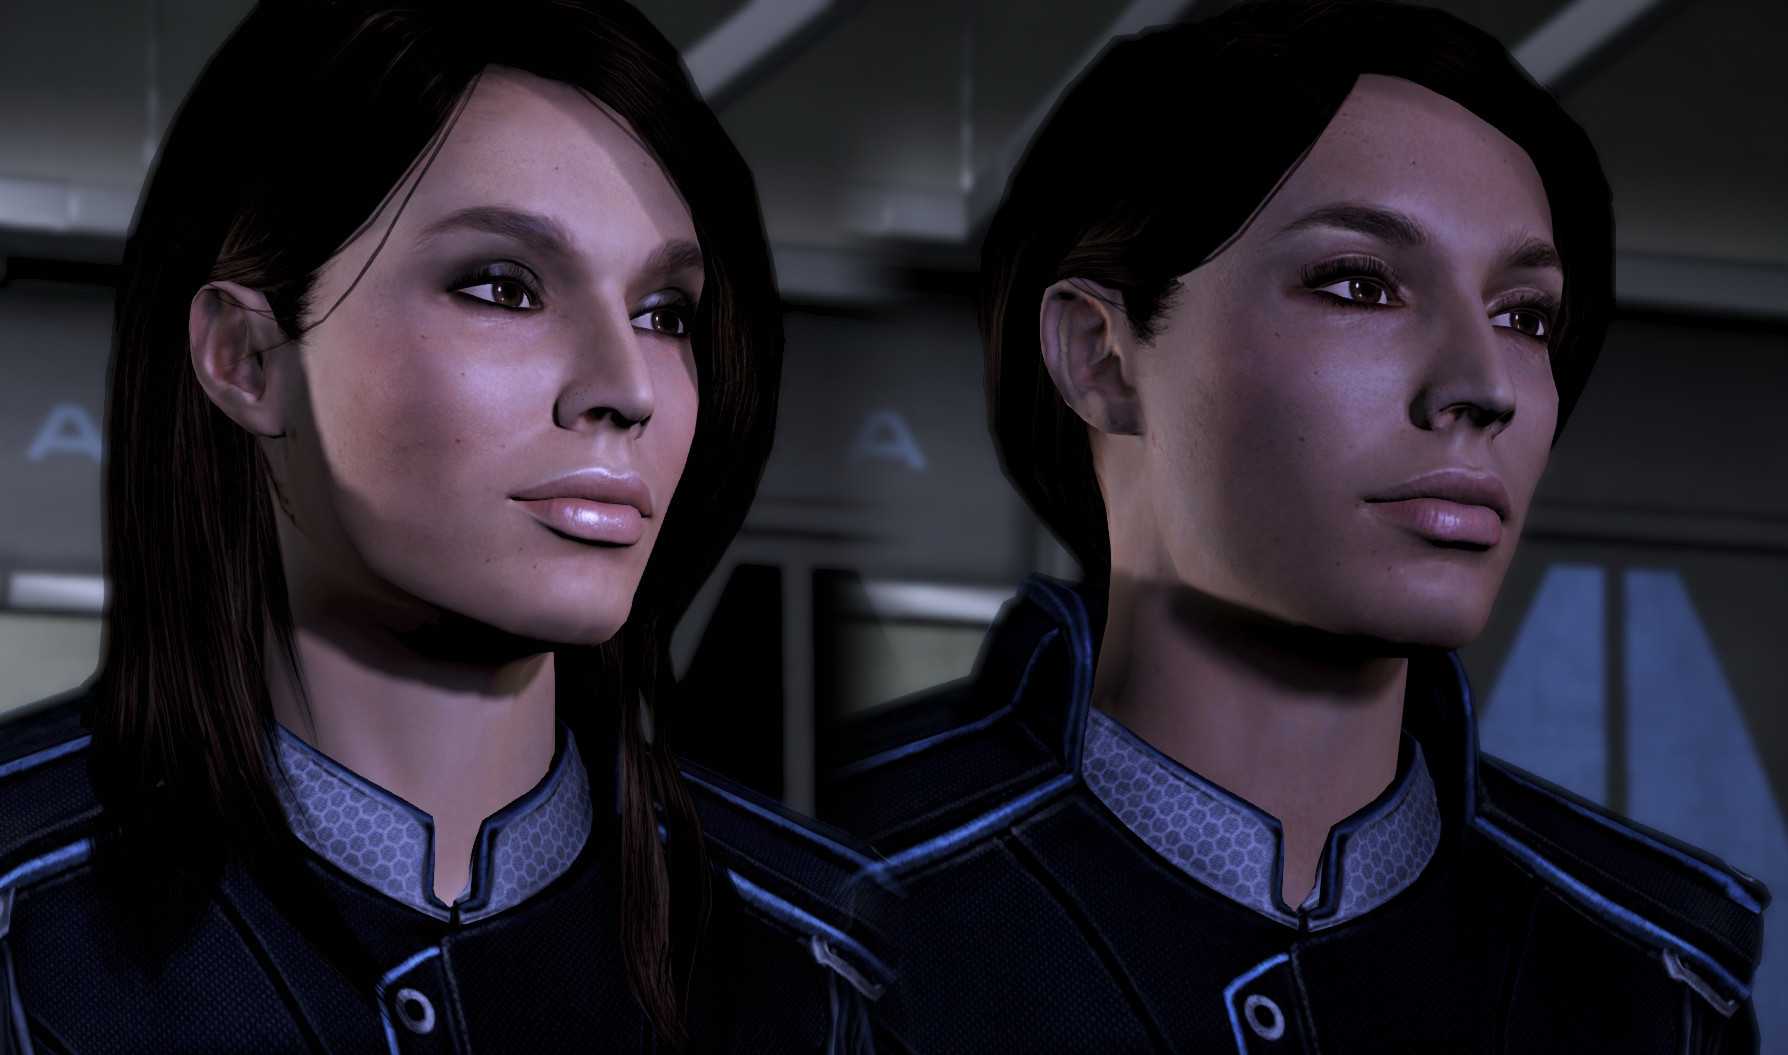 Less effects. Эшли Уильямс Mass Effect. Эшли Уильямс Mass Effect 1. Mass Effect 2 Эшли. Mass Effect 3 Legendary Edition Эшли.